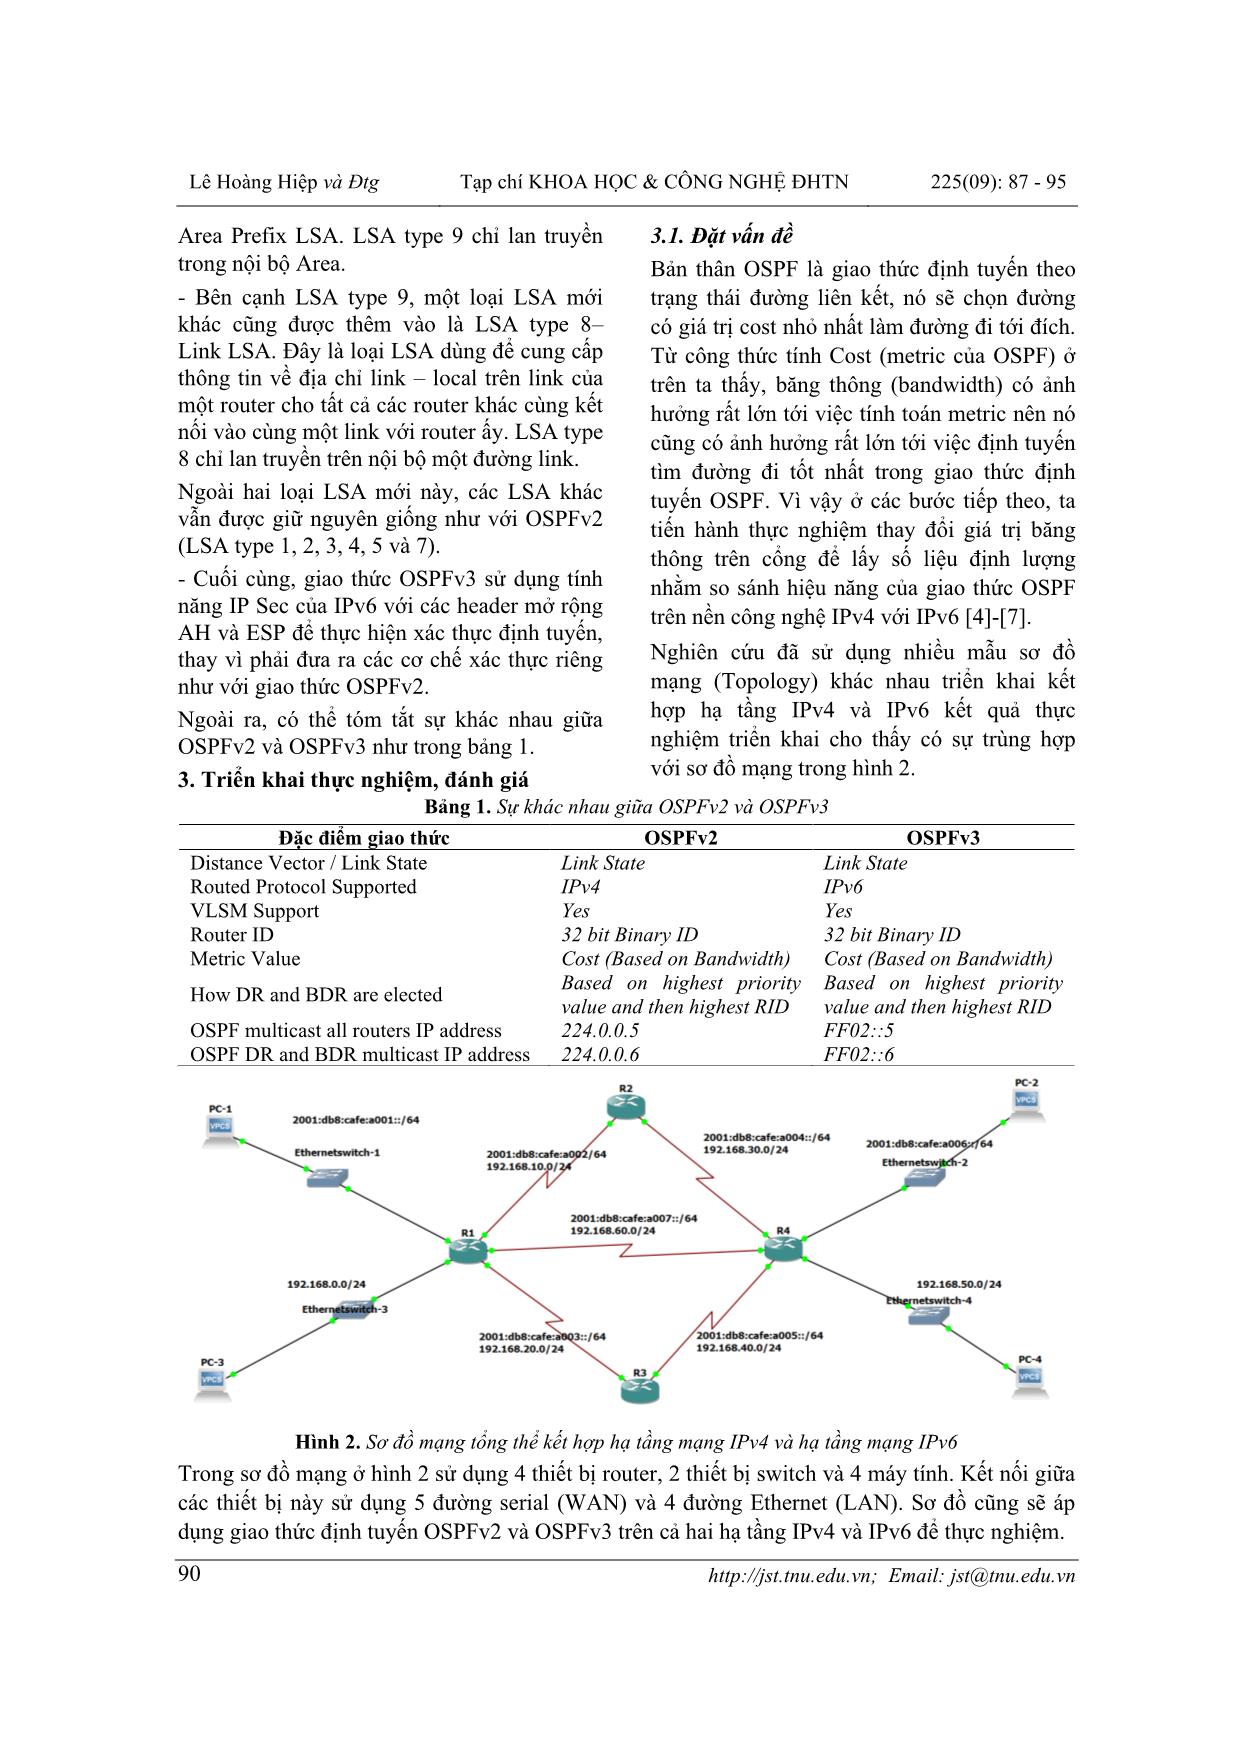 Nghiên cứu đánh giá hiệu năng giao thức định tuyến Open Shortest Path First trên nền IPv4 với IPv6 trang 4